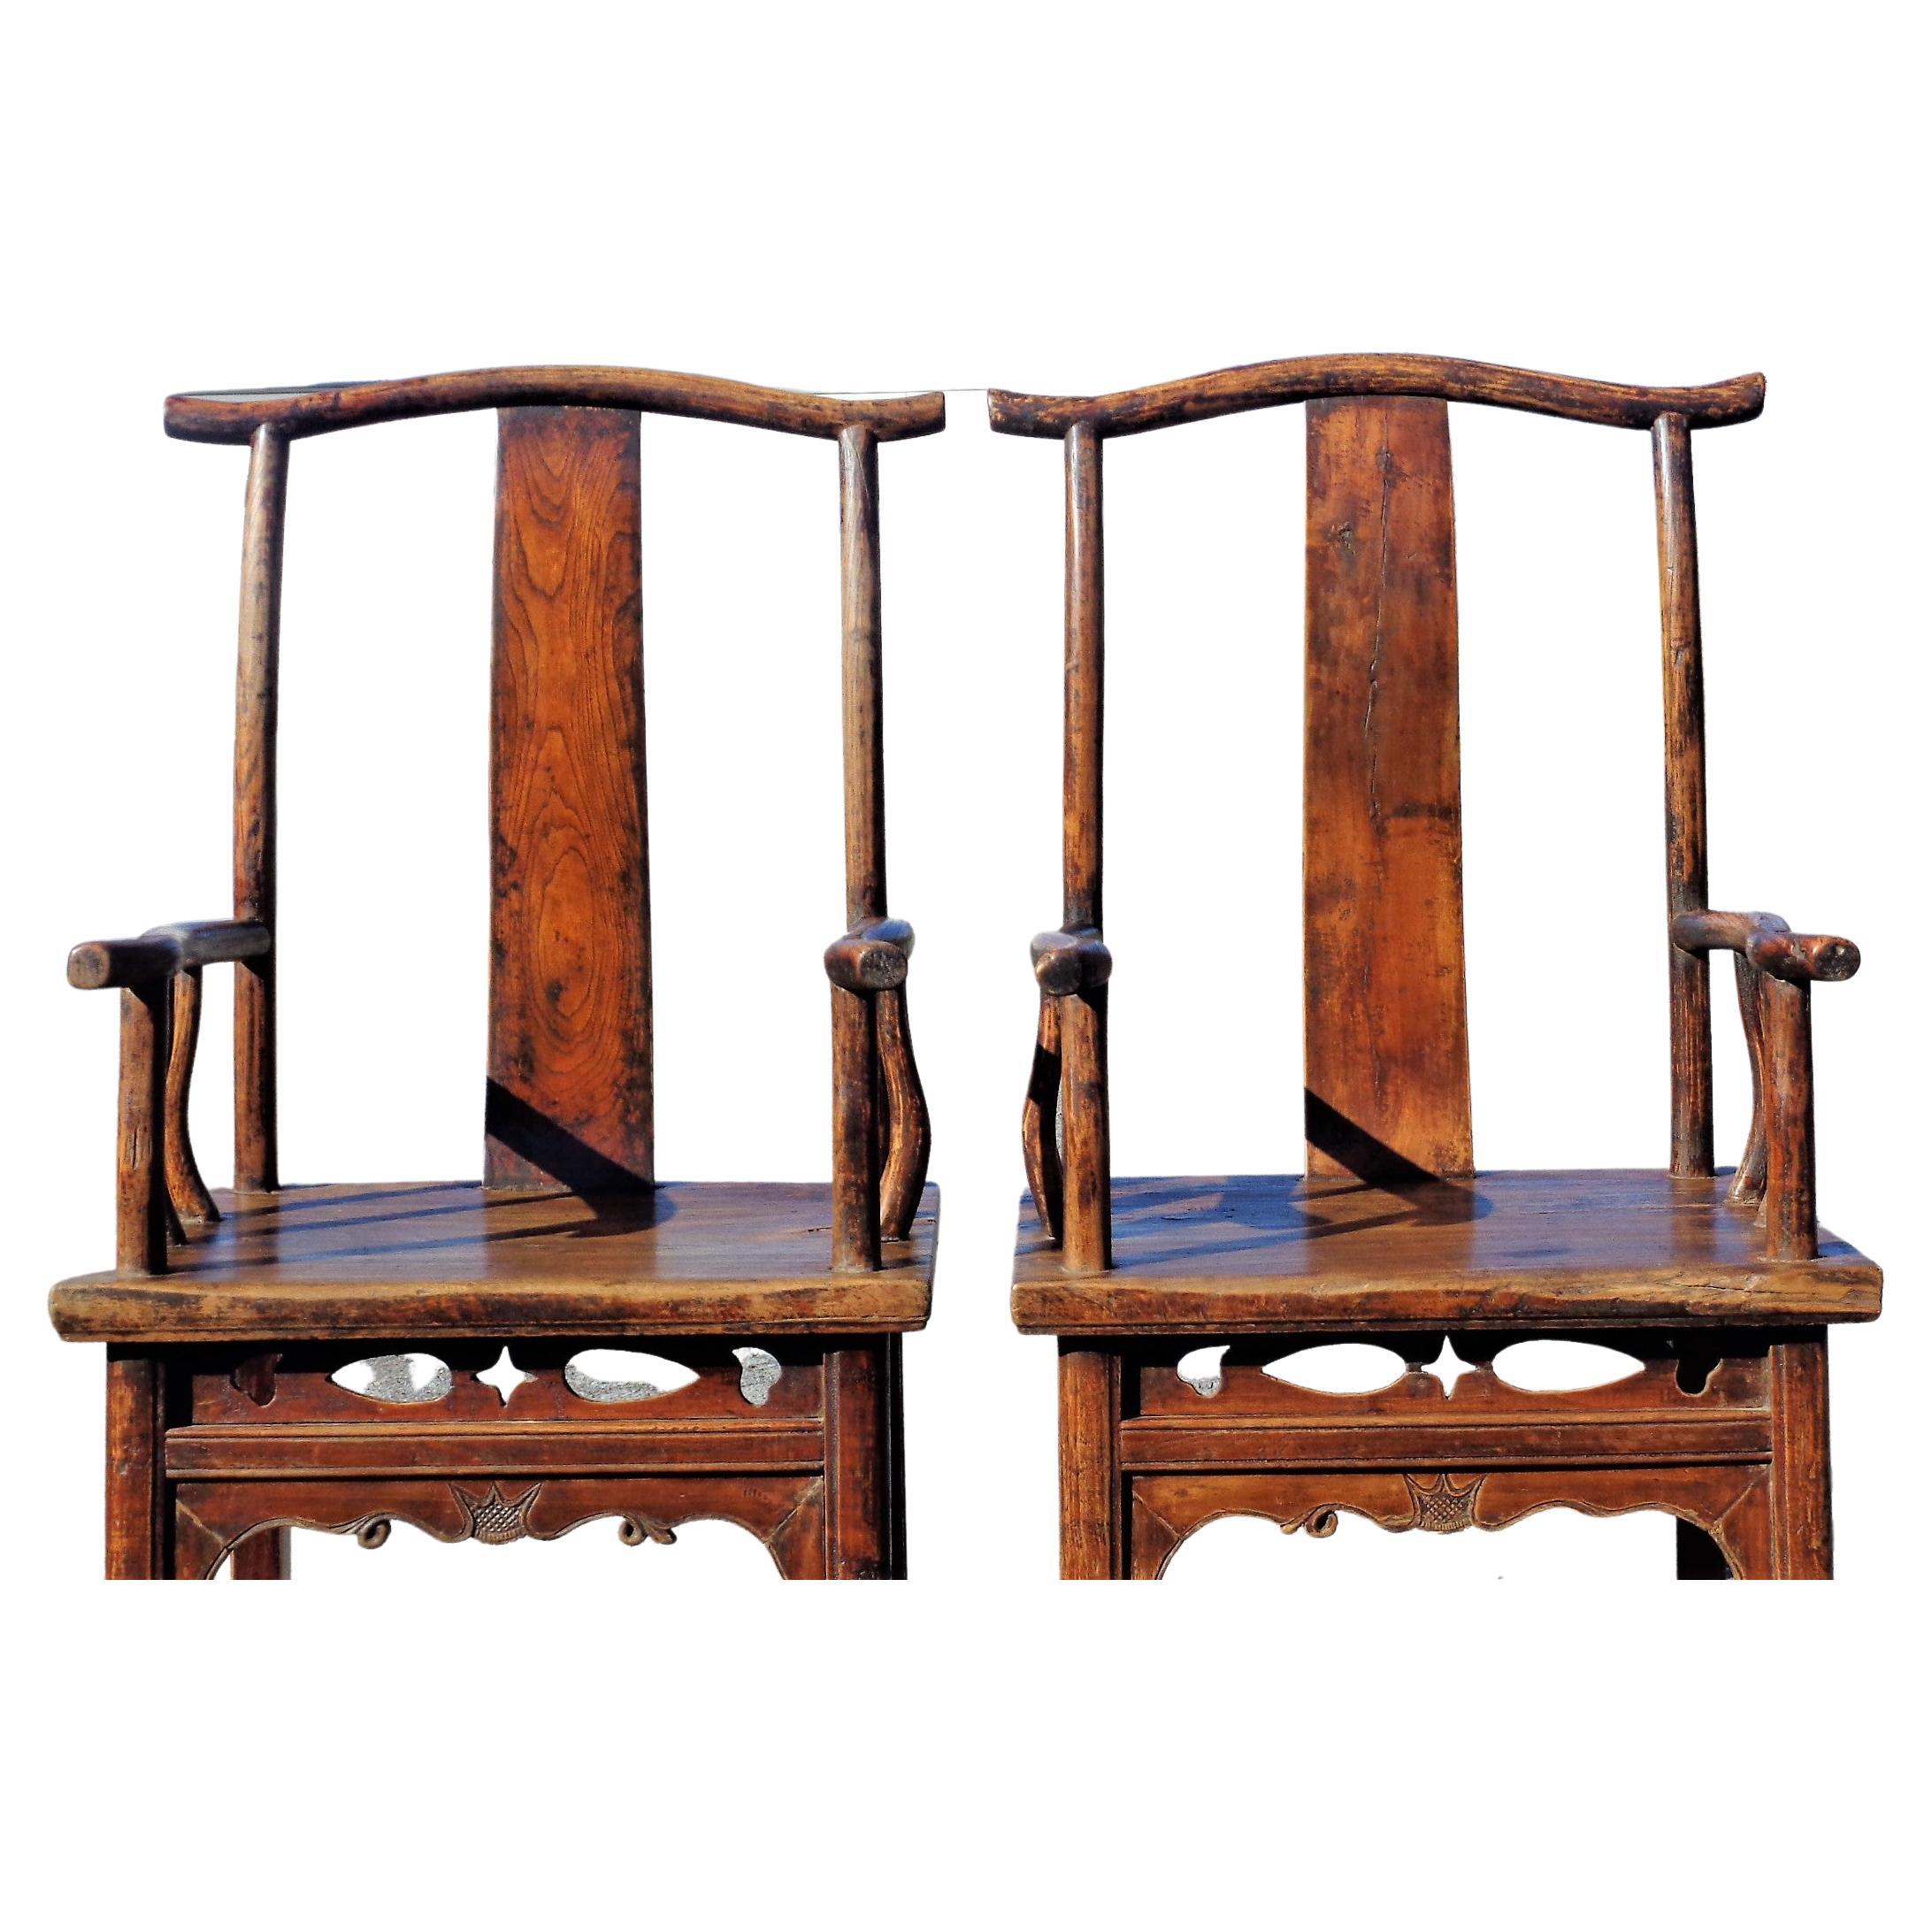 Paar chinesische Qing-Dynastie Hartholz Ulme Joch zurück Sessel ( Beamte Hut Stühle ) in schön gealtert ursprünglichen alten Oberfläche Farbe Patina w / gut gemasert. Ende des 19. Jahrhunderts. Sehen Sie sich alle Bilder an und lesen Sie den